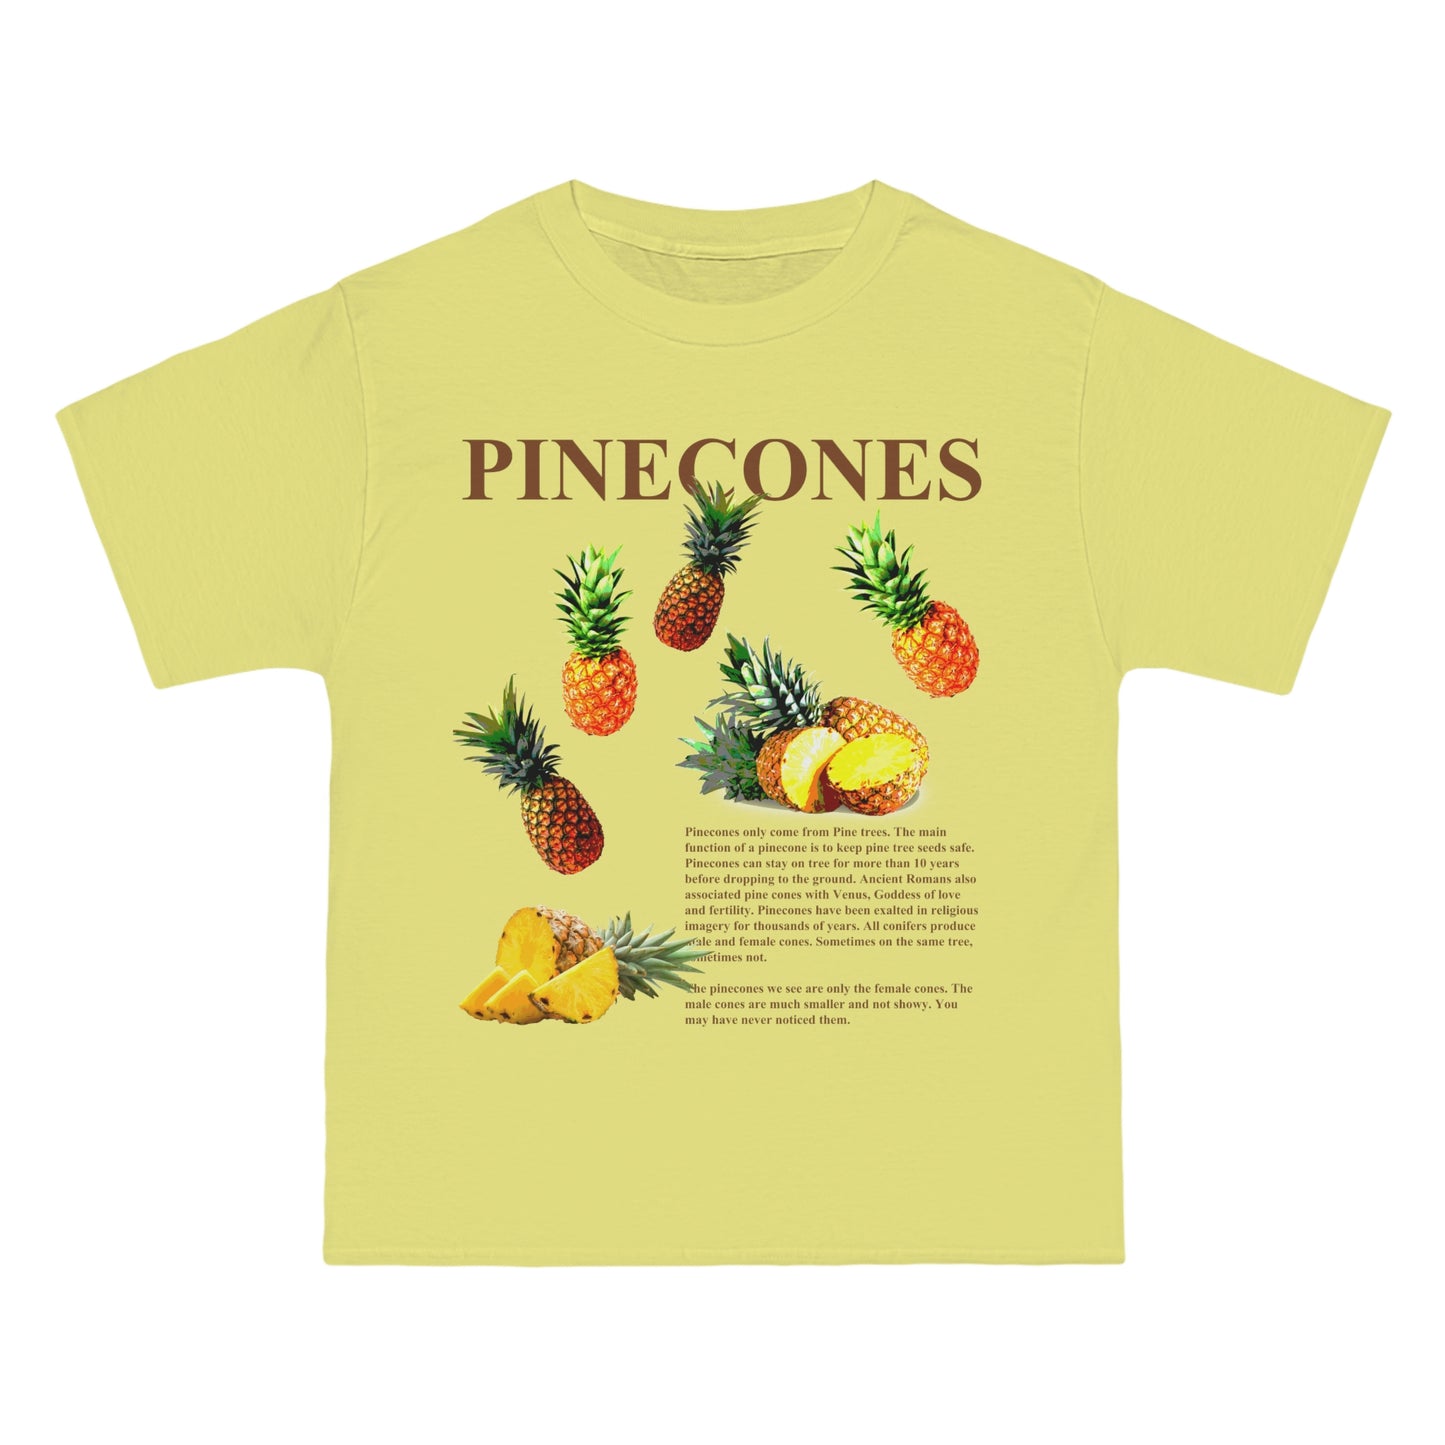 PINECONES